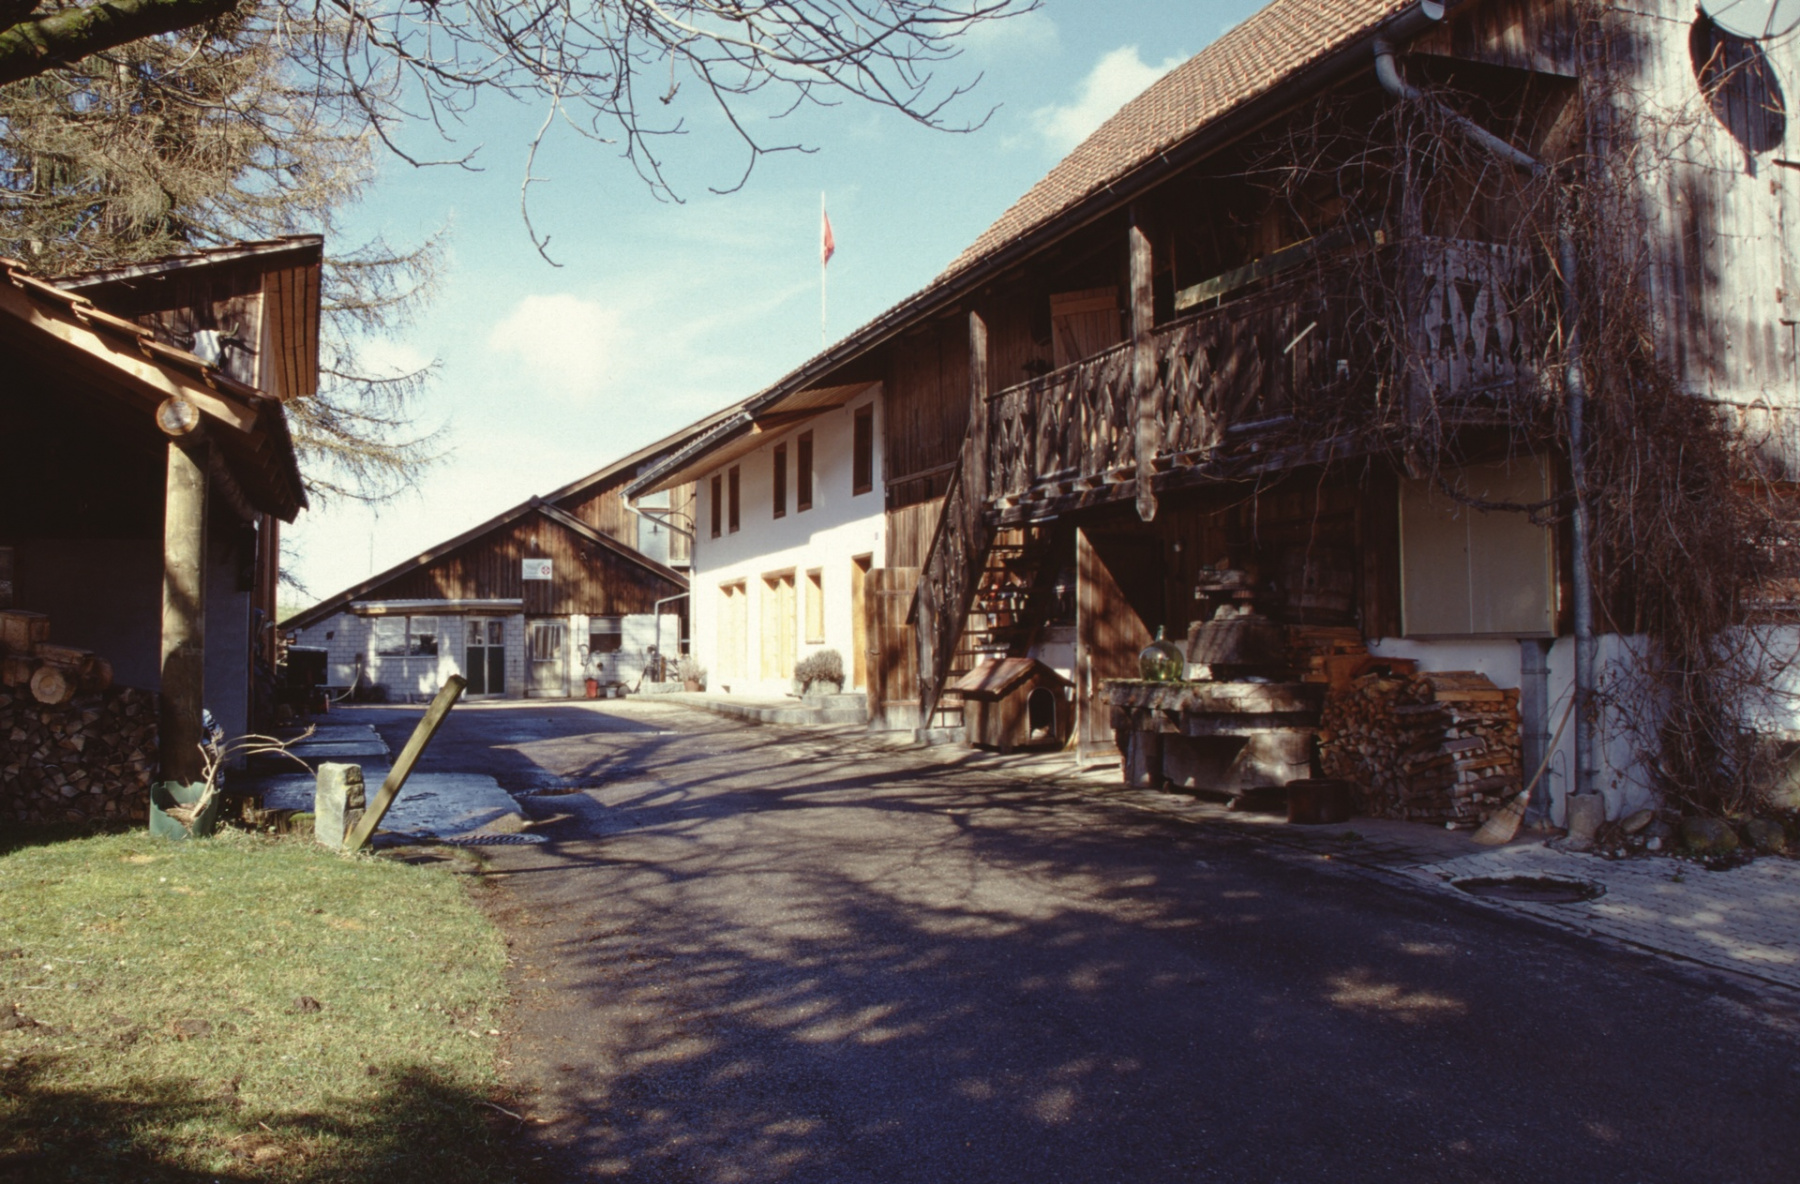 Liegenschaft Dubach, 1813 eingetragen als zwei halbe Wohnhäuser mit Scheunen.